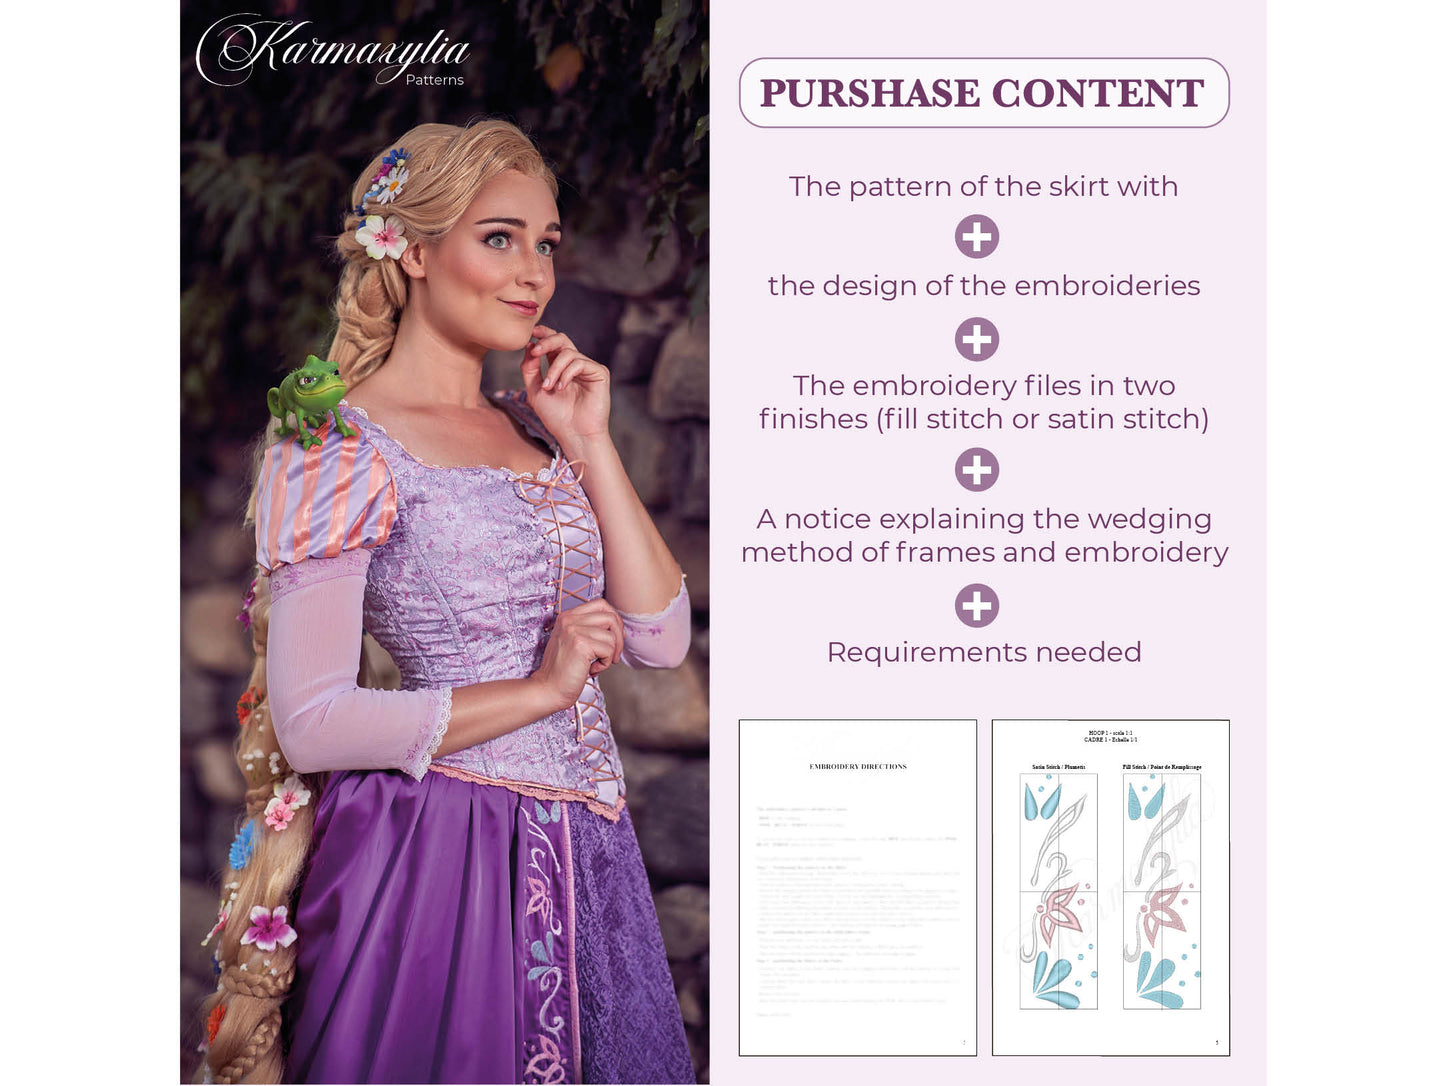 5x10'' frame Rapunzel Skirt Embroidery machine design and pattern - 11x26cm Motif de broderie et patron de la jupe de Raiponce